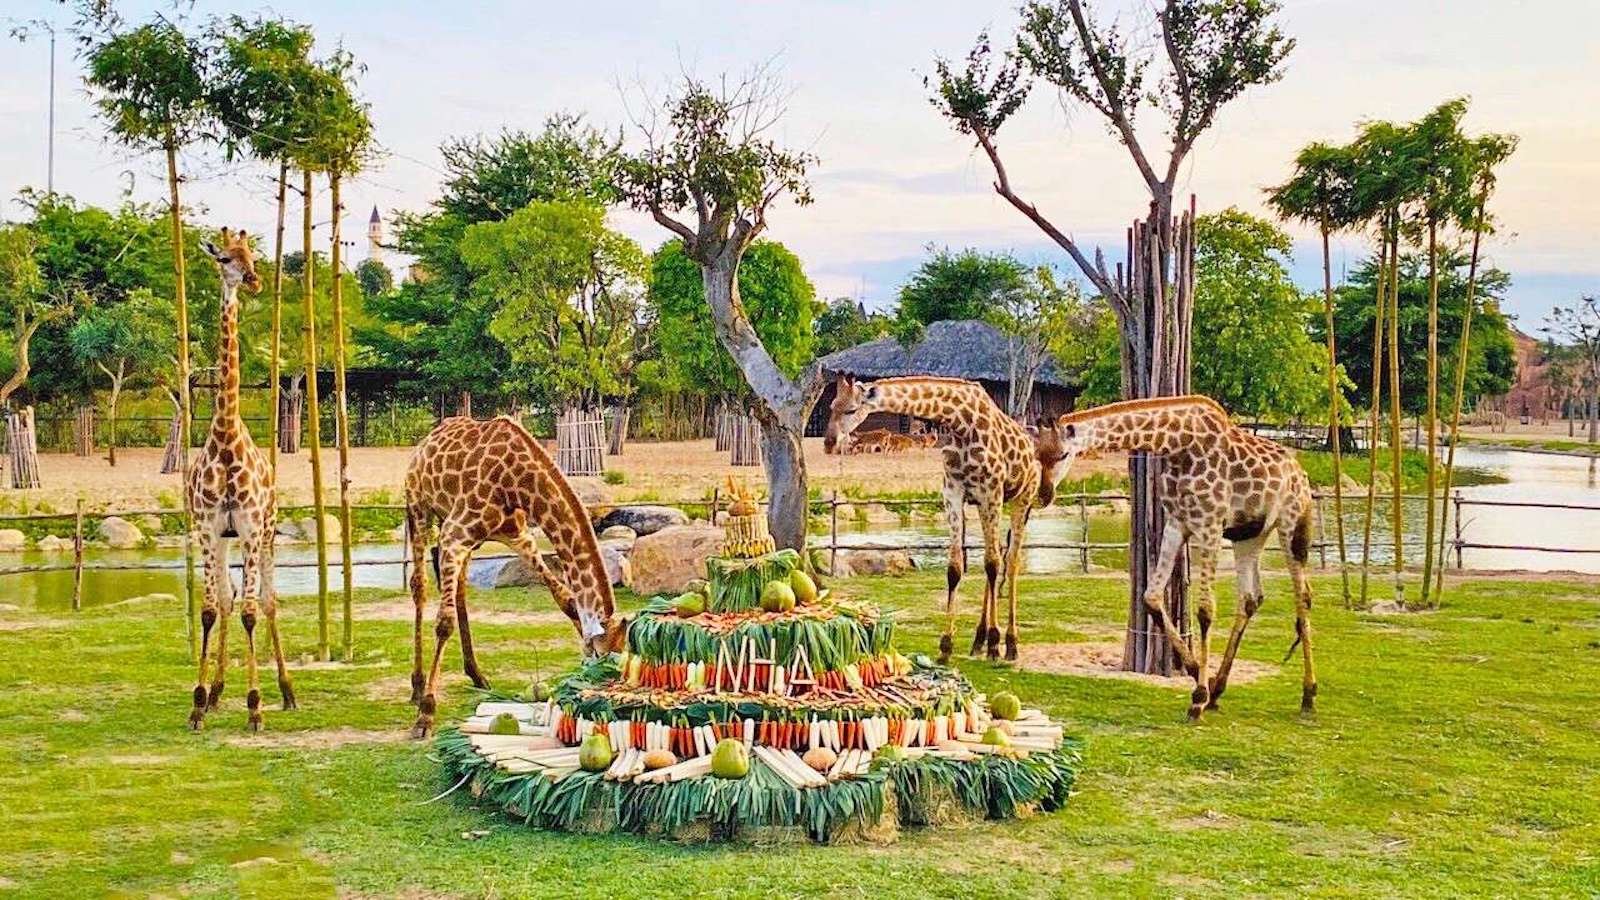 Giraffes at the River Safari